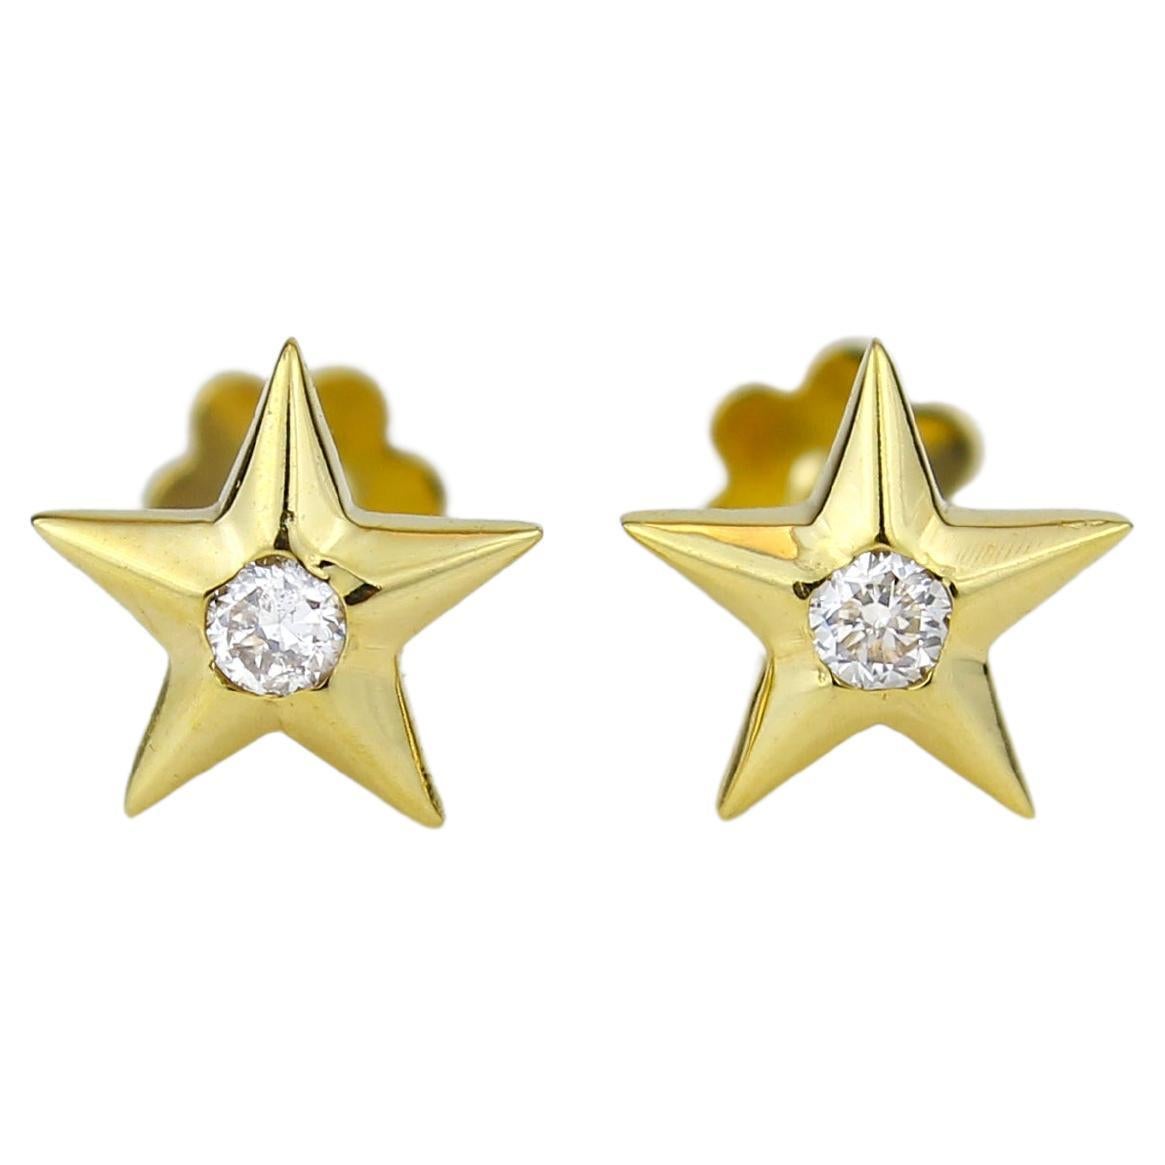 24K Gold Star Stud Earrings, 24K Gold Star Earrings, 24K Gold Stud Earrings,  Cute Stud Earrings, Gift for Her EM234 - Etsy